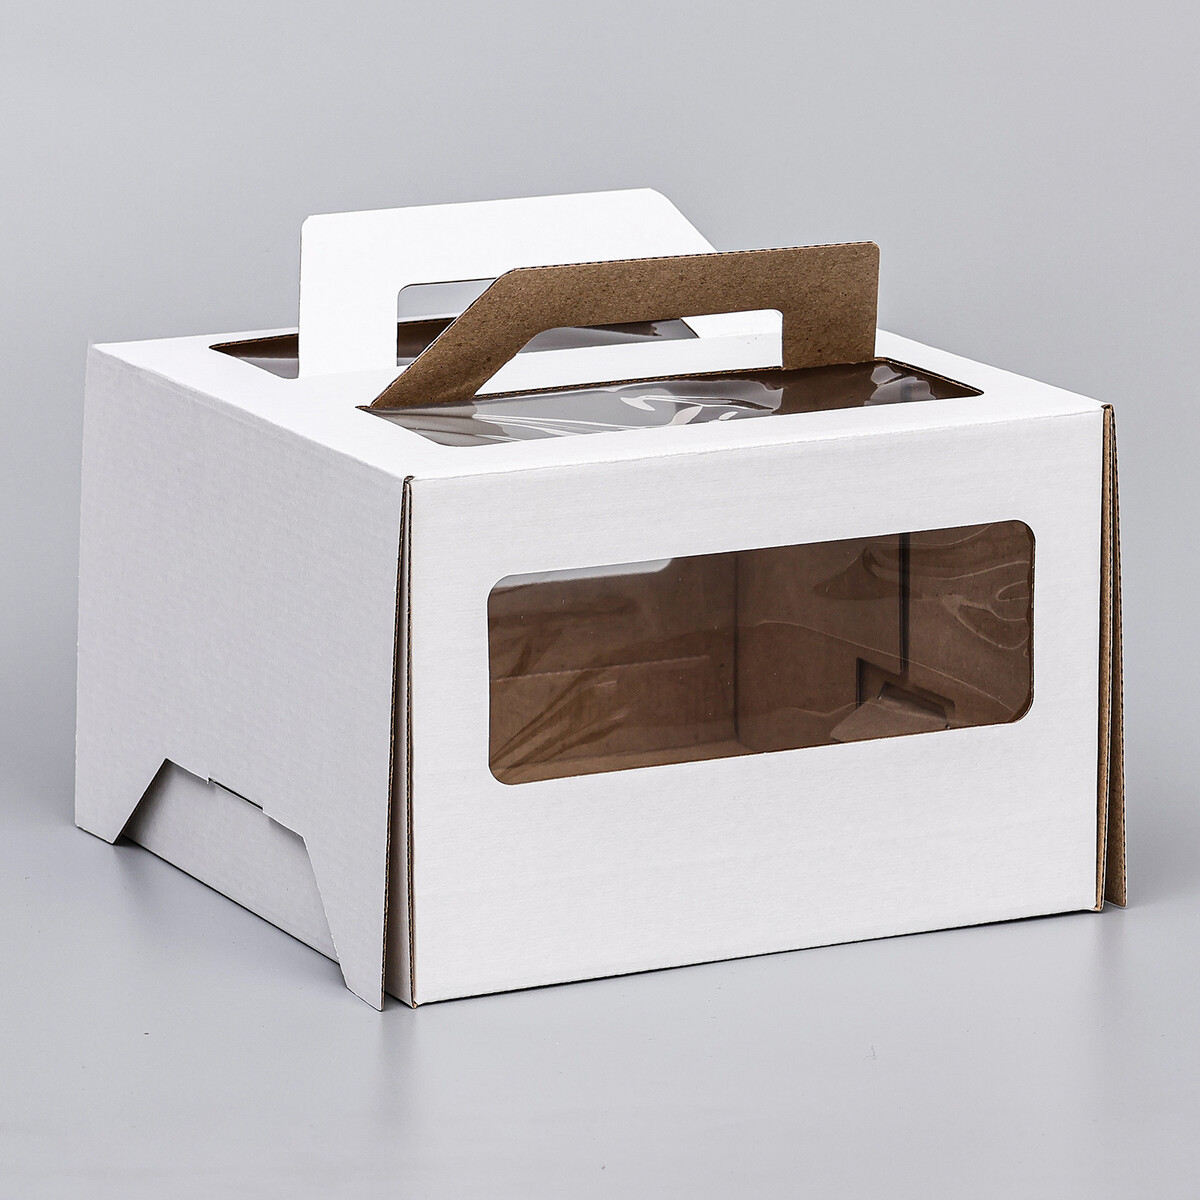 Коробка под торт 2 окна, с ручками, белая, 22 х 22 х 15 см коробка самосборная белая 19 х 19 х 3 см